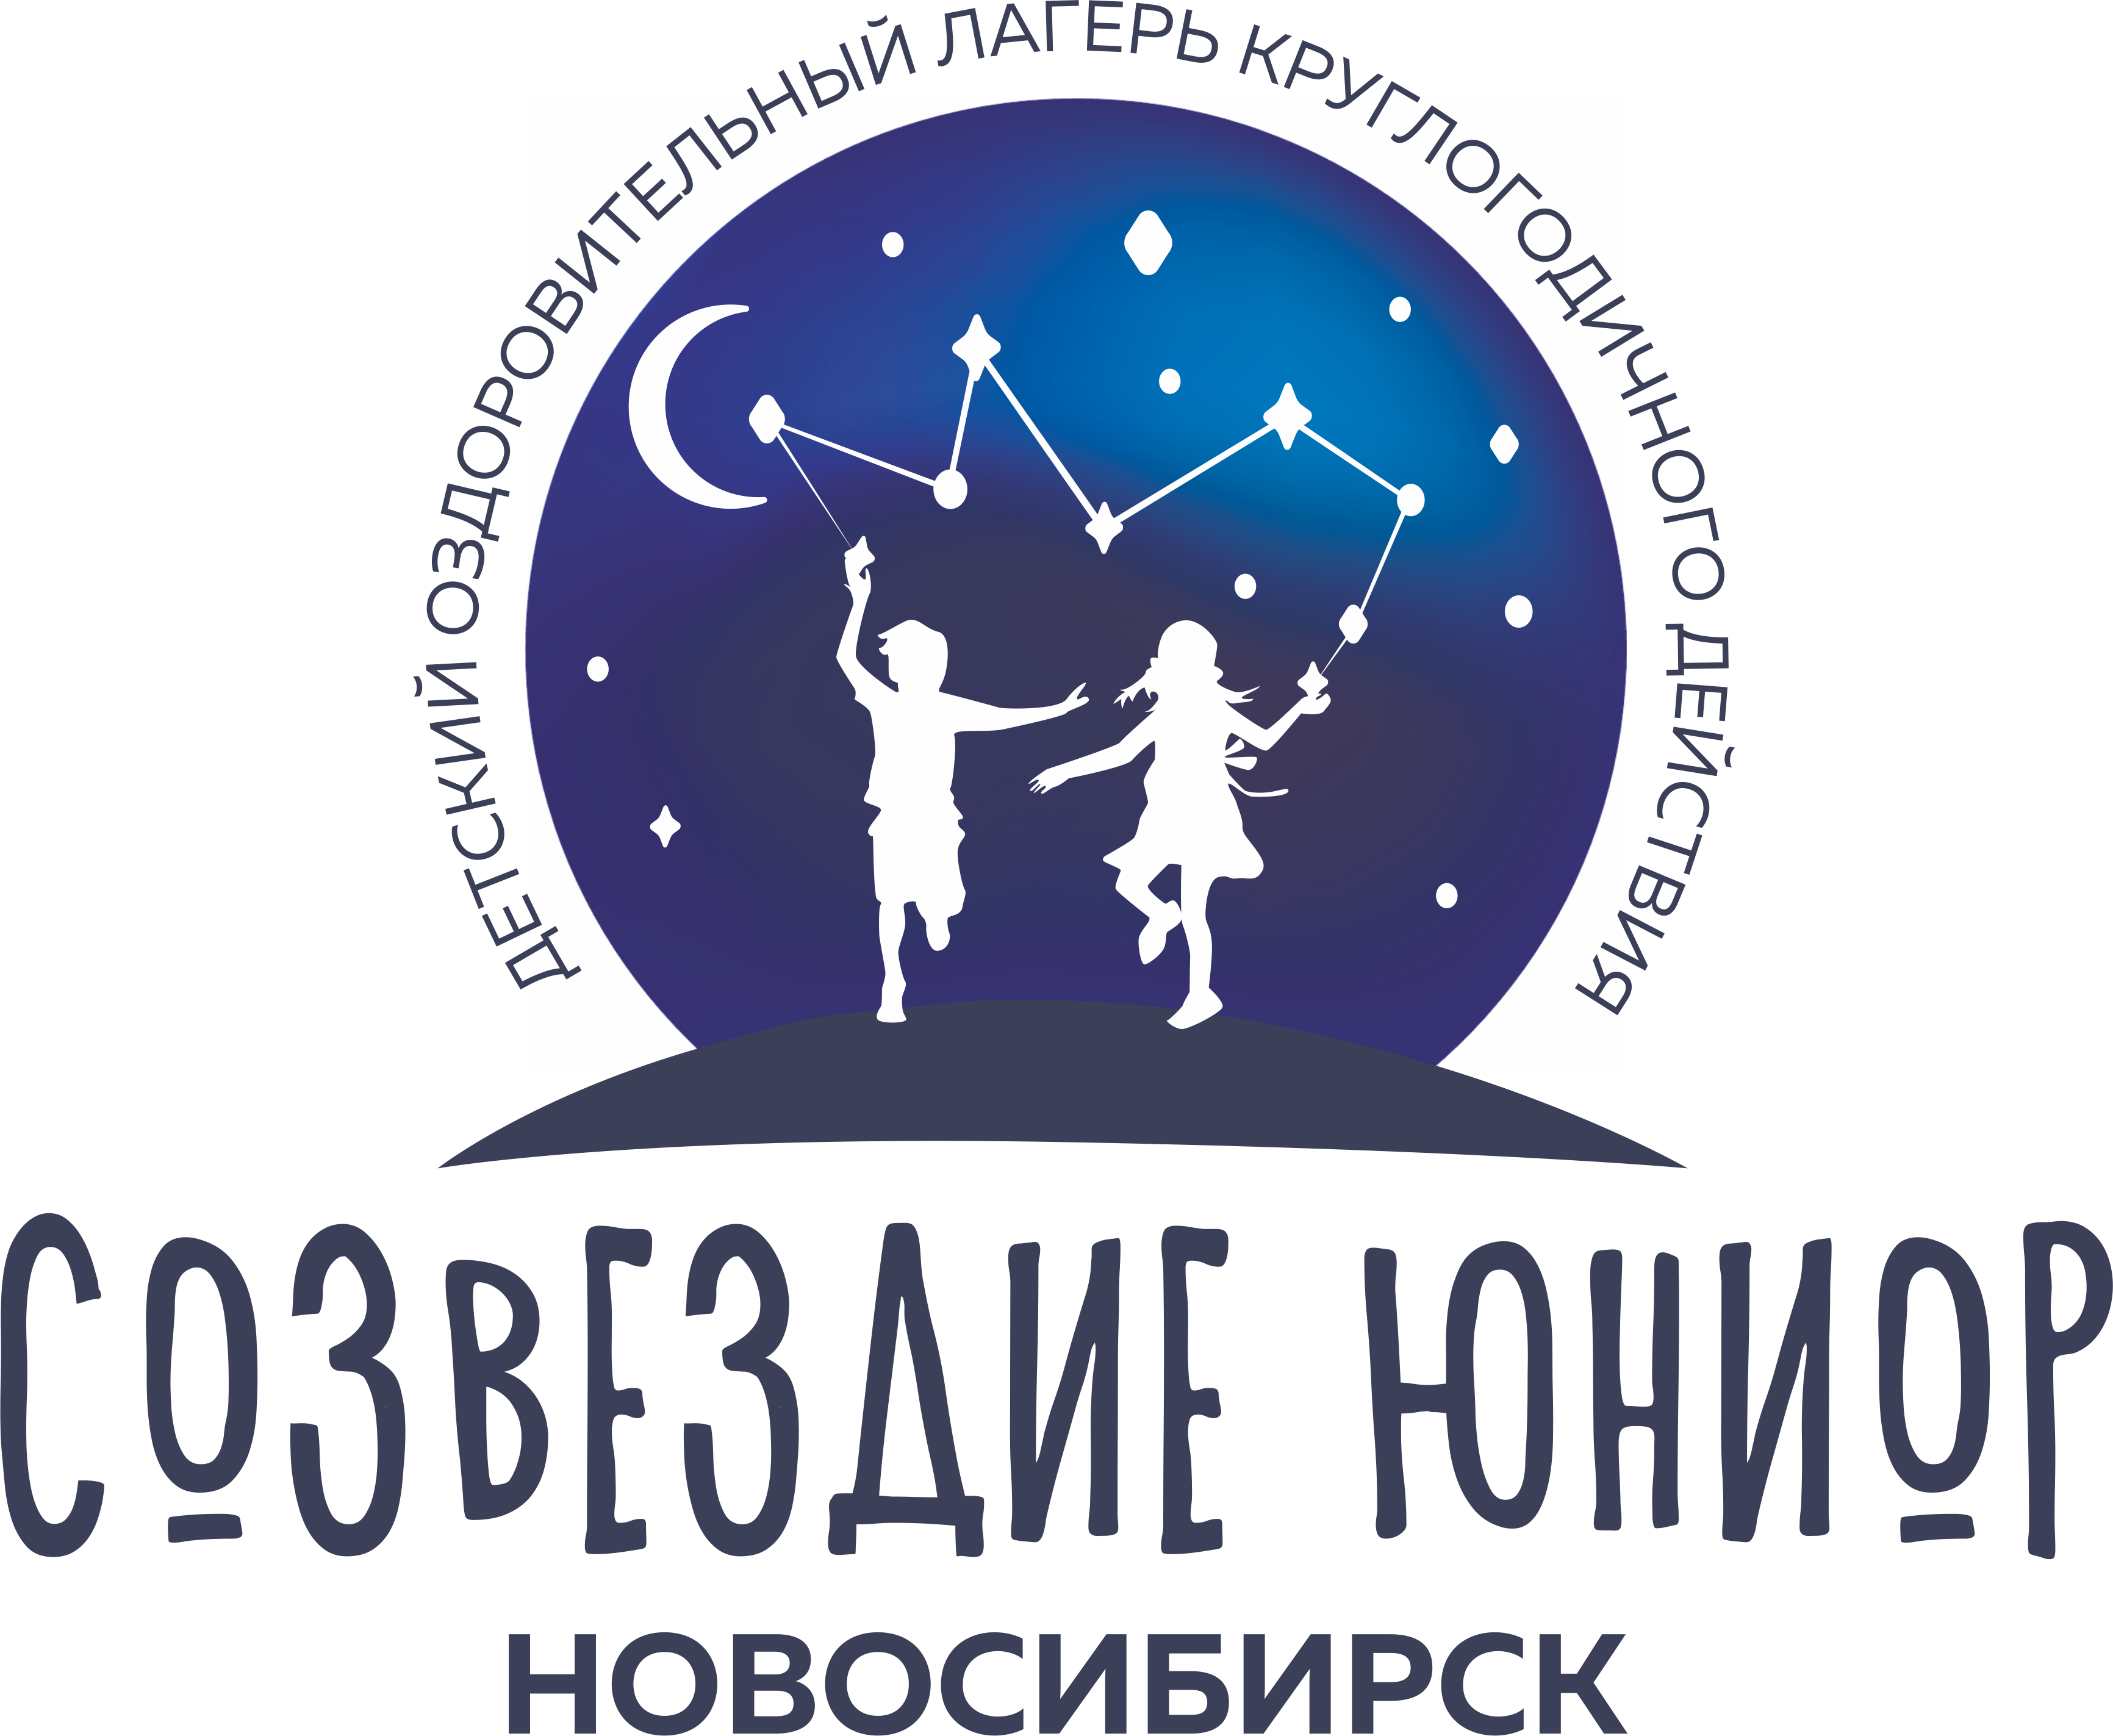 Сайт юниор новосибирск. Созвездие Юниор лагерь Новосибирск. Созвездие логотип. Созвездие лагерь логотип. Созвездие Юниор лагерь Новосибирск логотип.